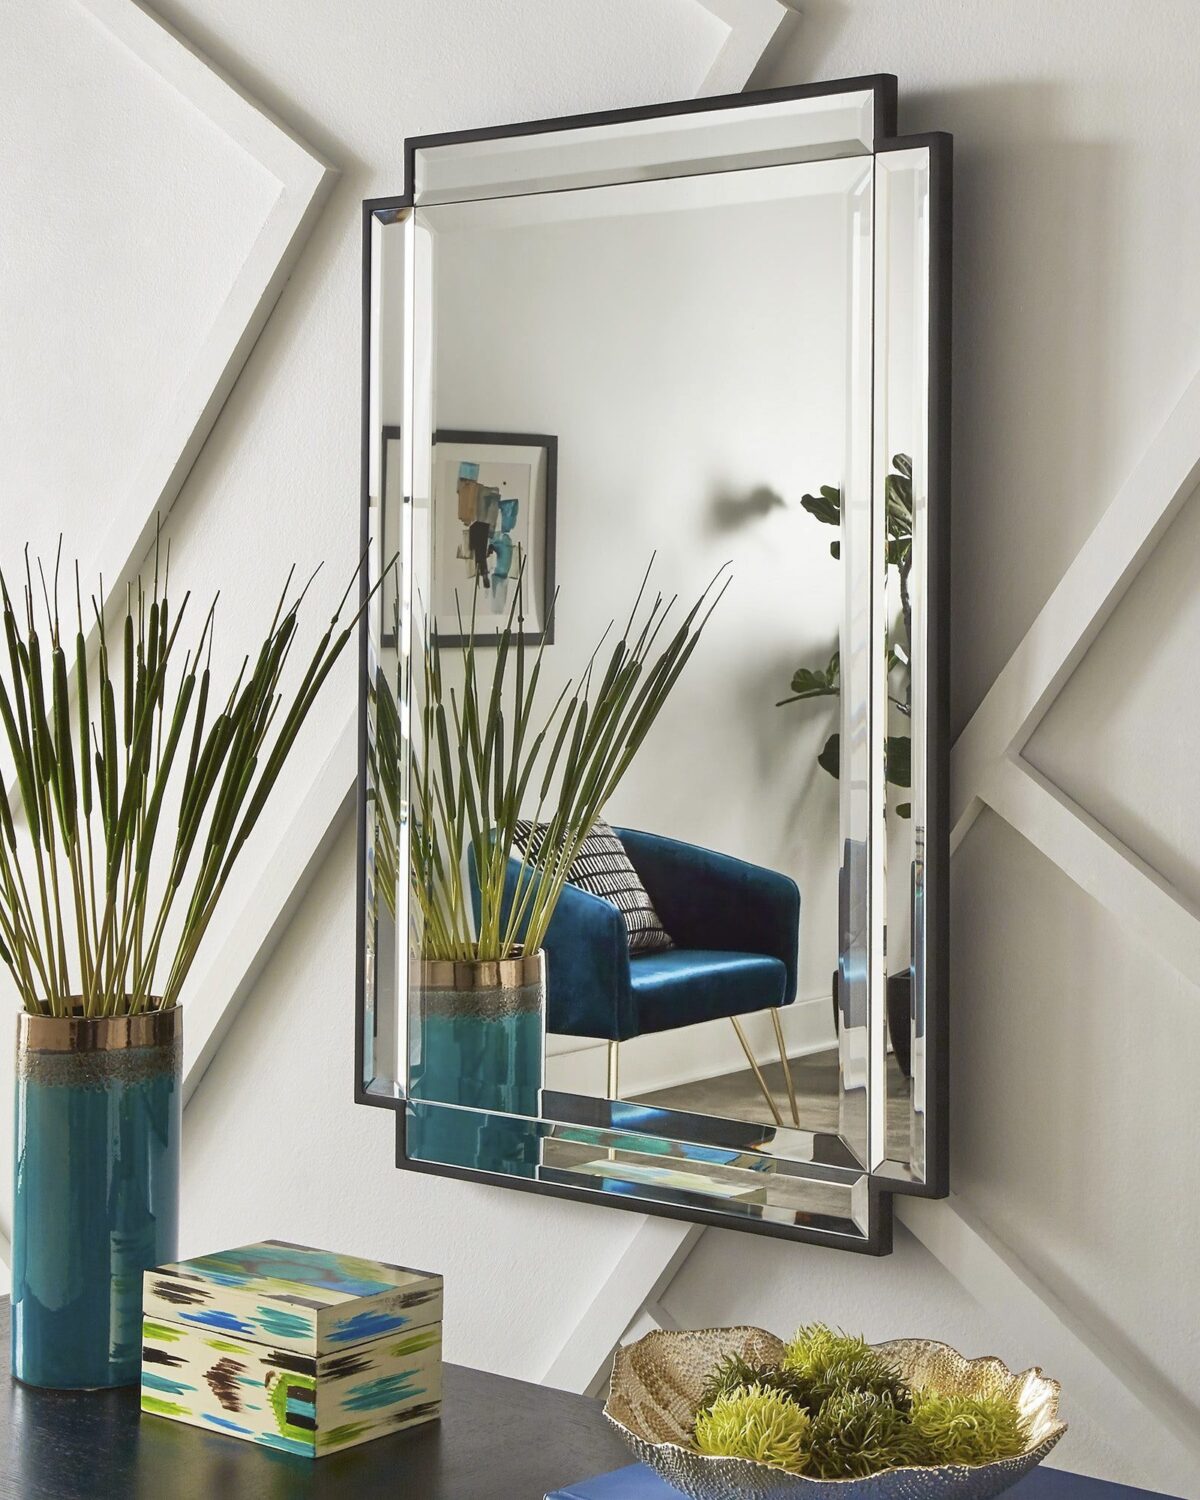 Зеркало в интерьере как элемент декора квартиры.